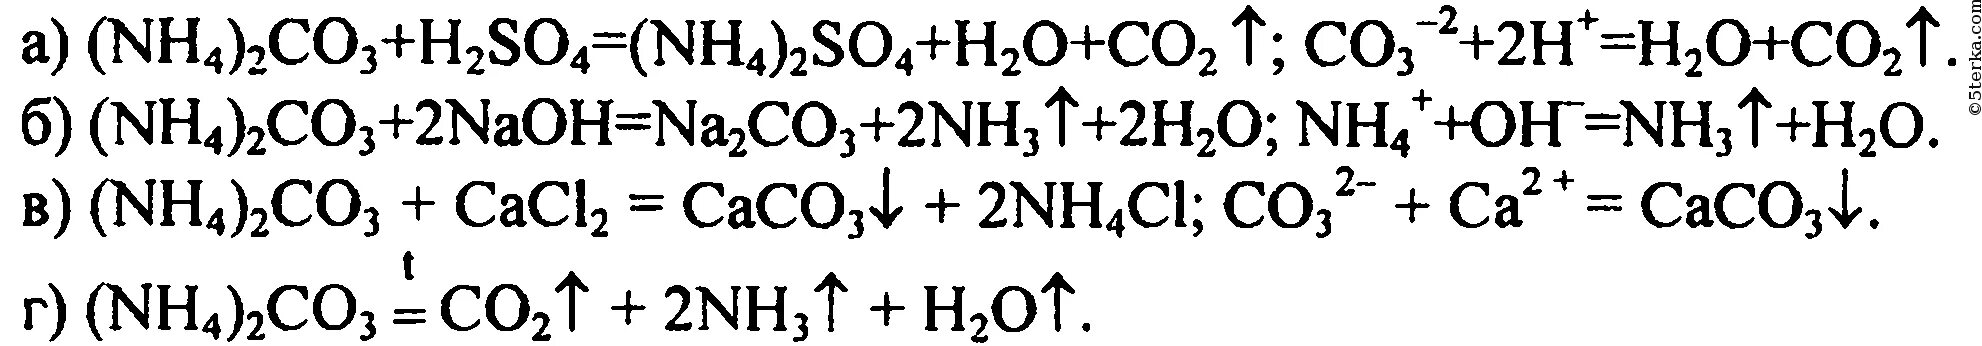 Реакция карбоната аммония взаимодействие с кислотой. Взаимодействие карбоната аммония с кислотой. Уравнение реакции карбоната аммония с щелочью. Карбонат аммония реакции. Реакция карбоната аммония с щелочью.